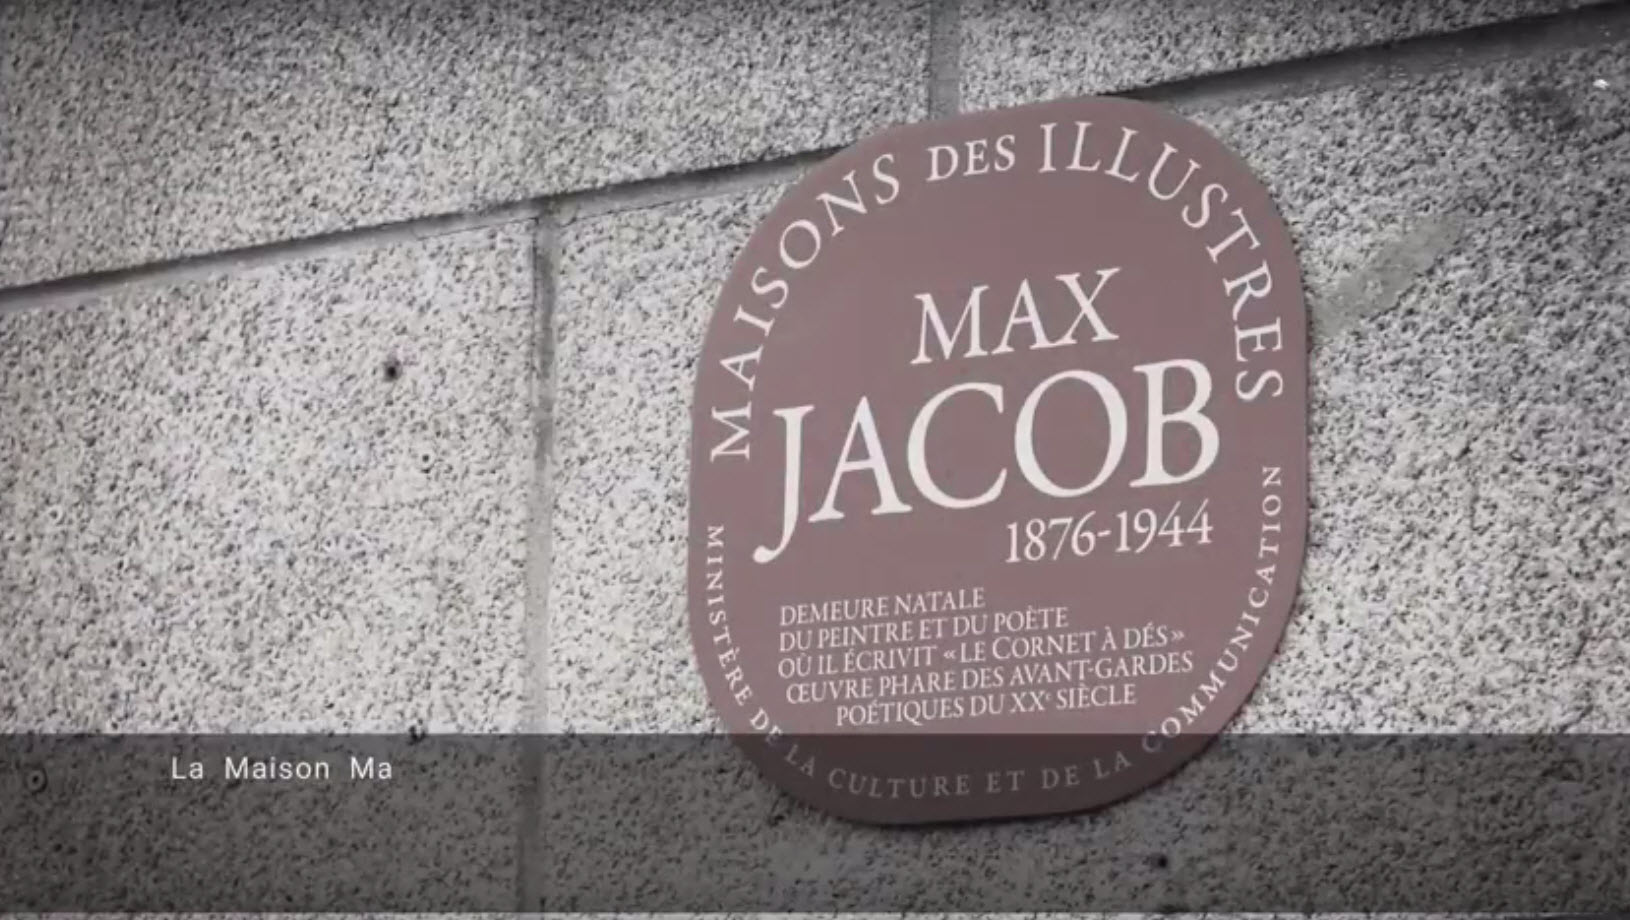 La maison de Max Jacob labellisée Maison des Illustres